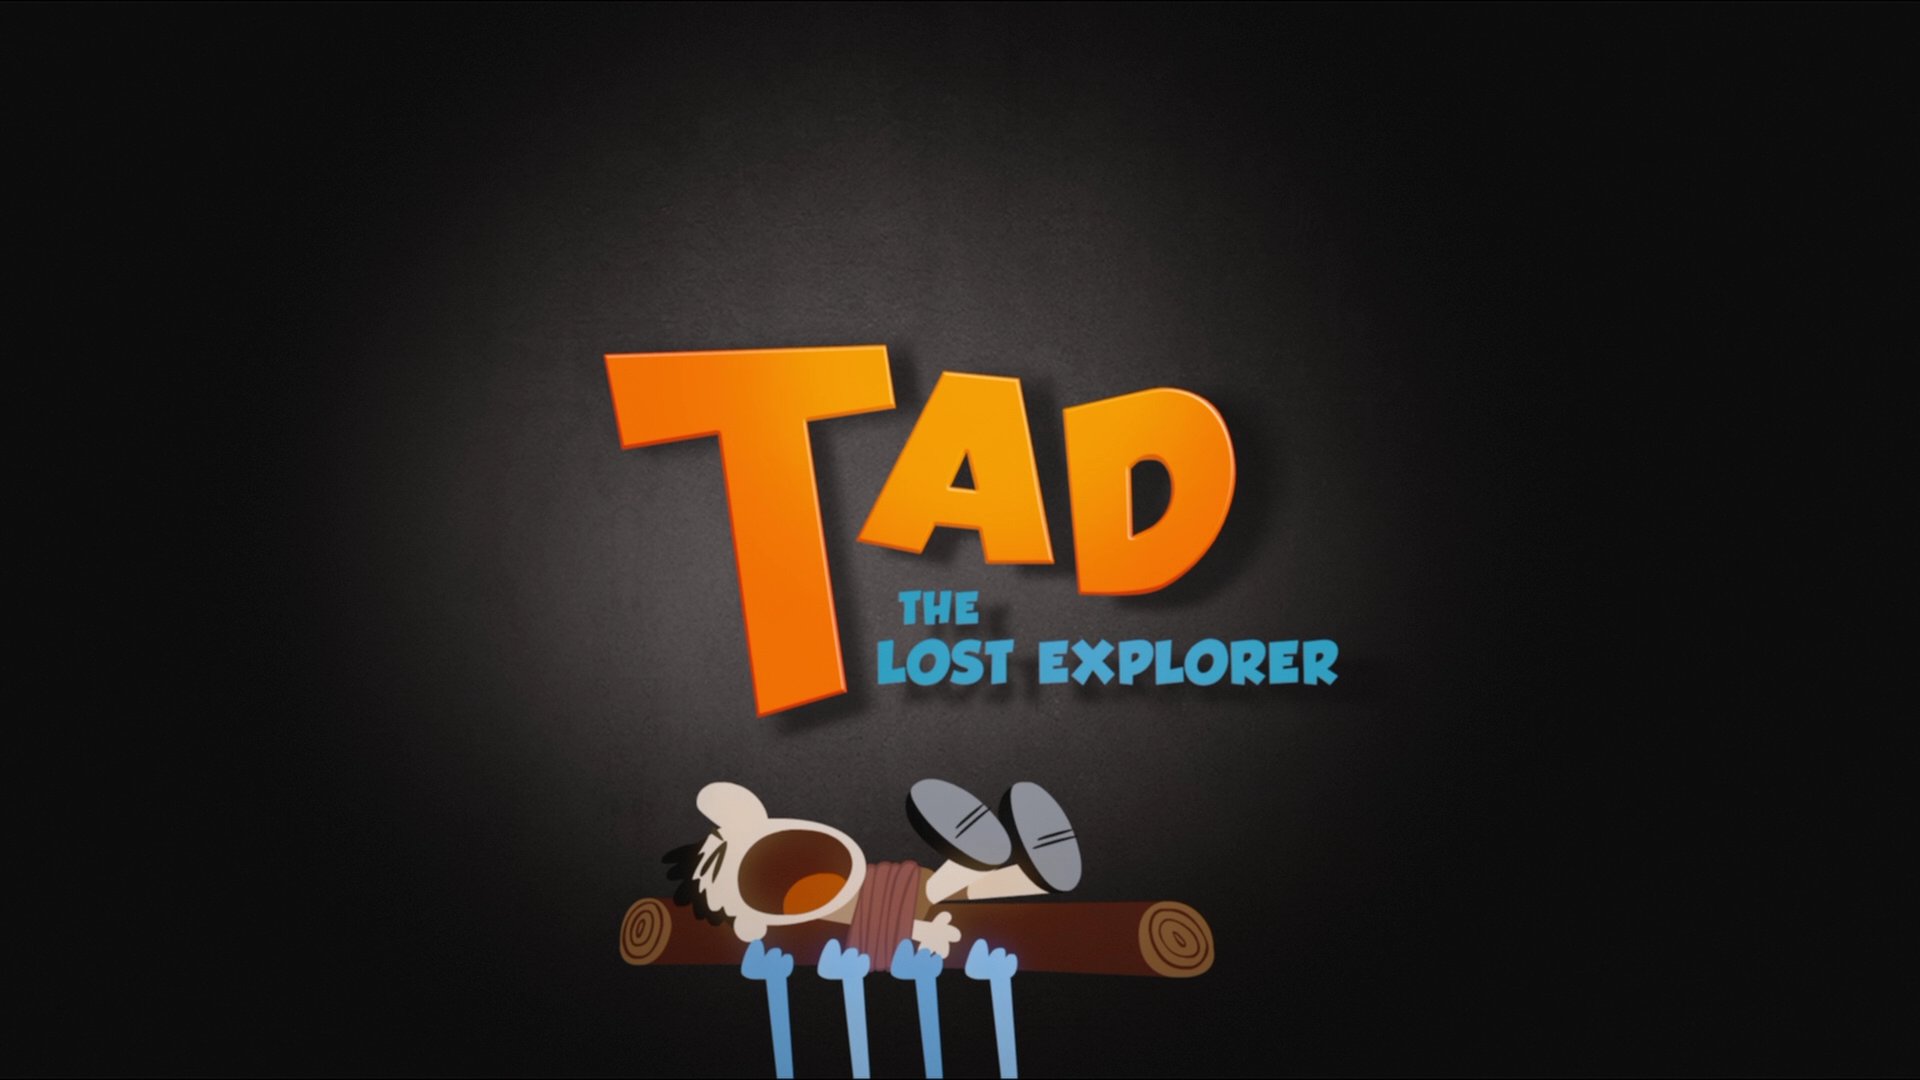 Tad, The Lost Explorer #20